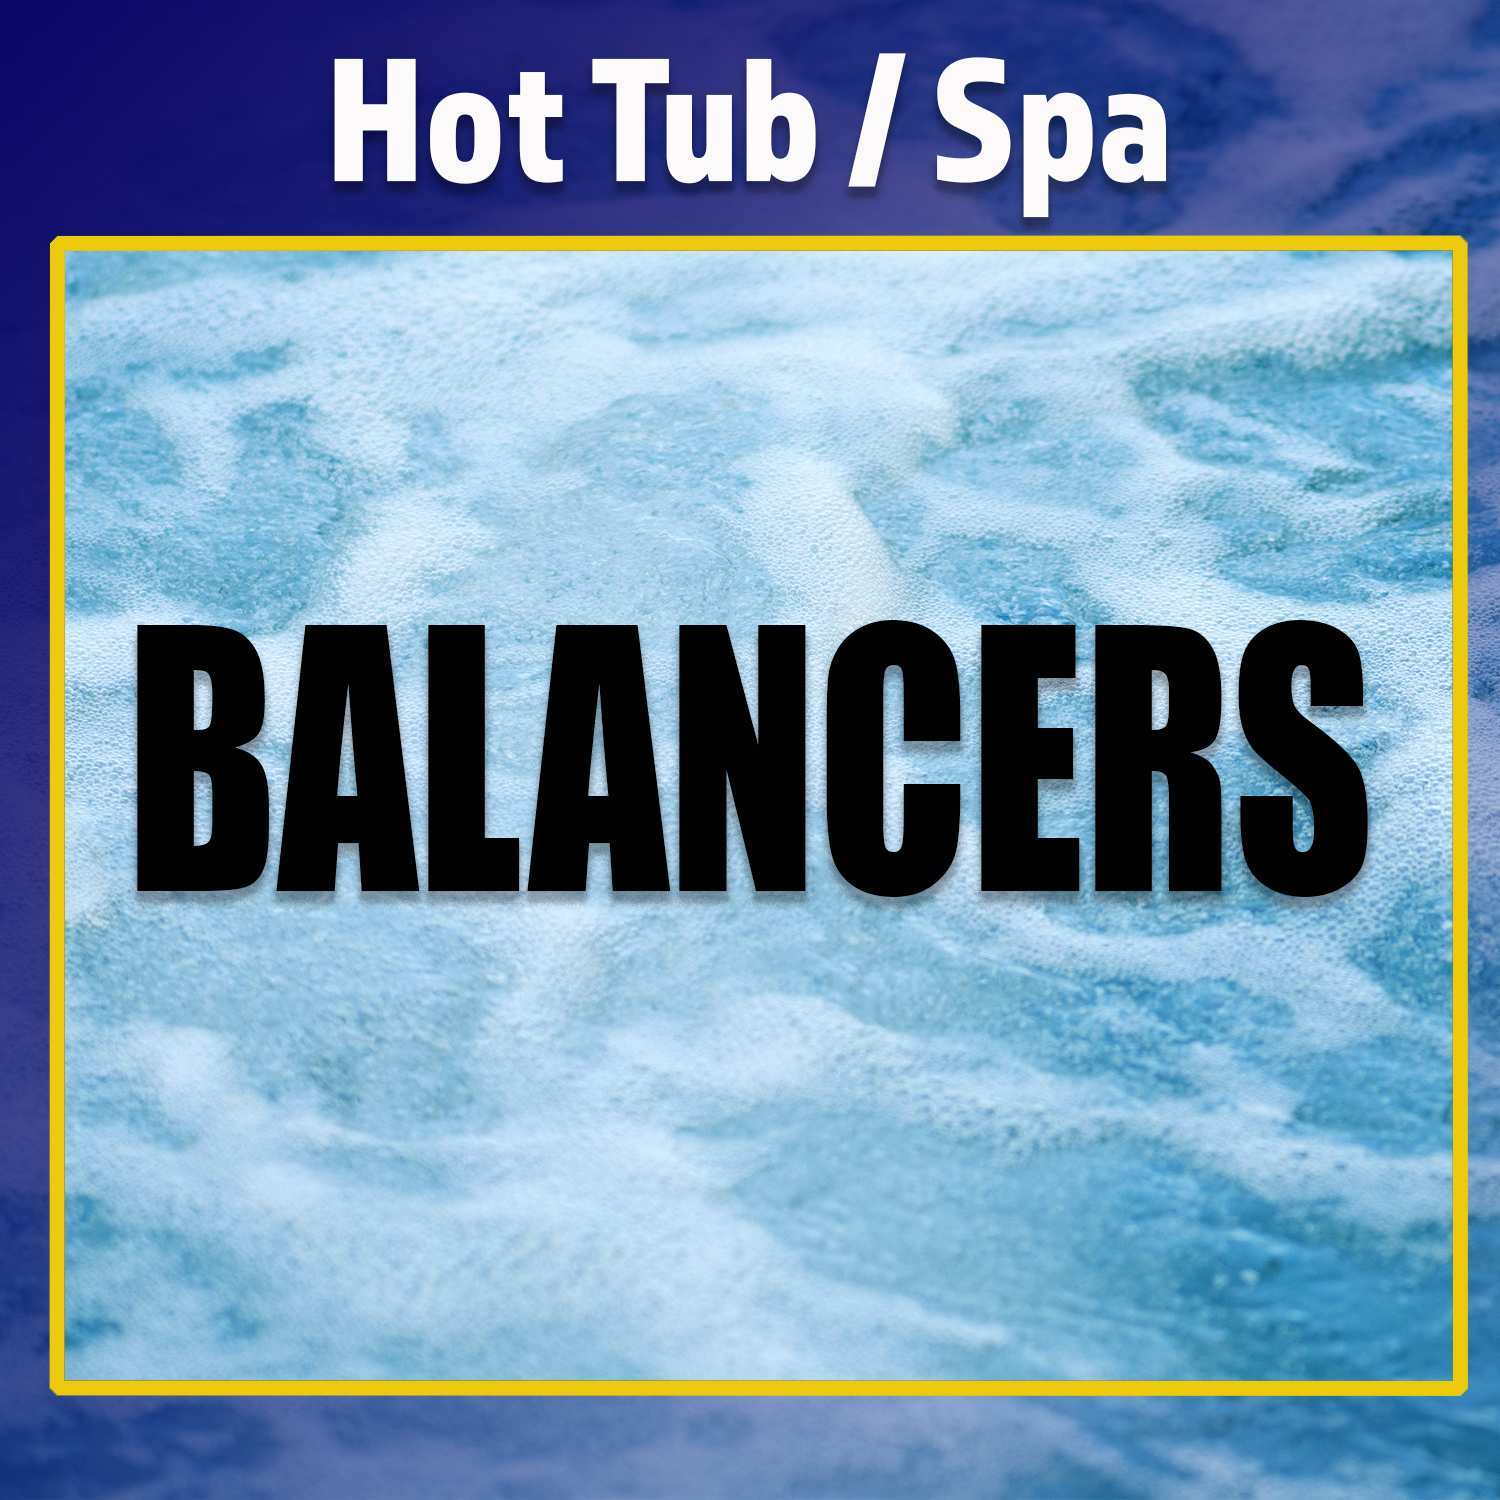 Hot Tub Balancers